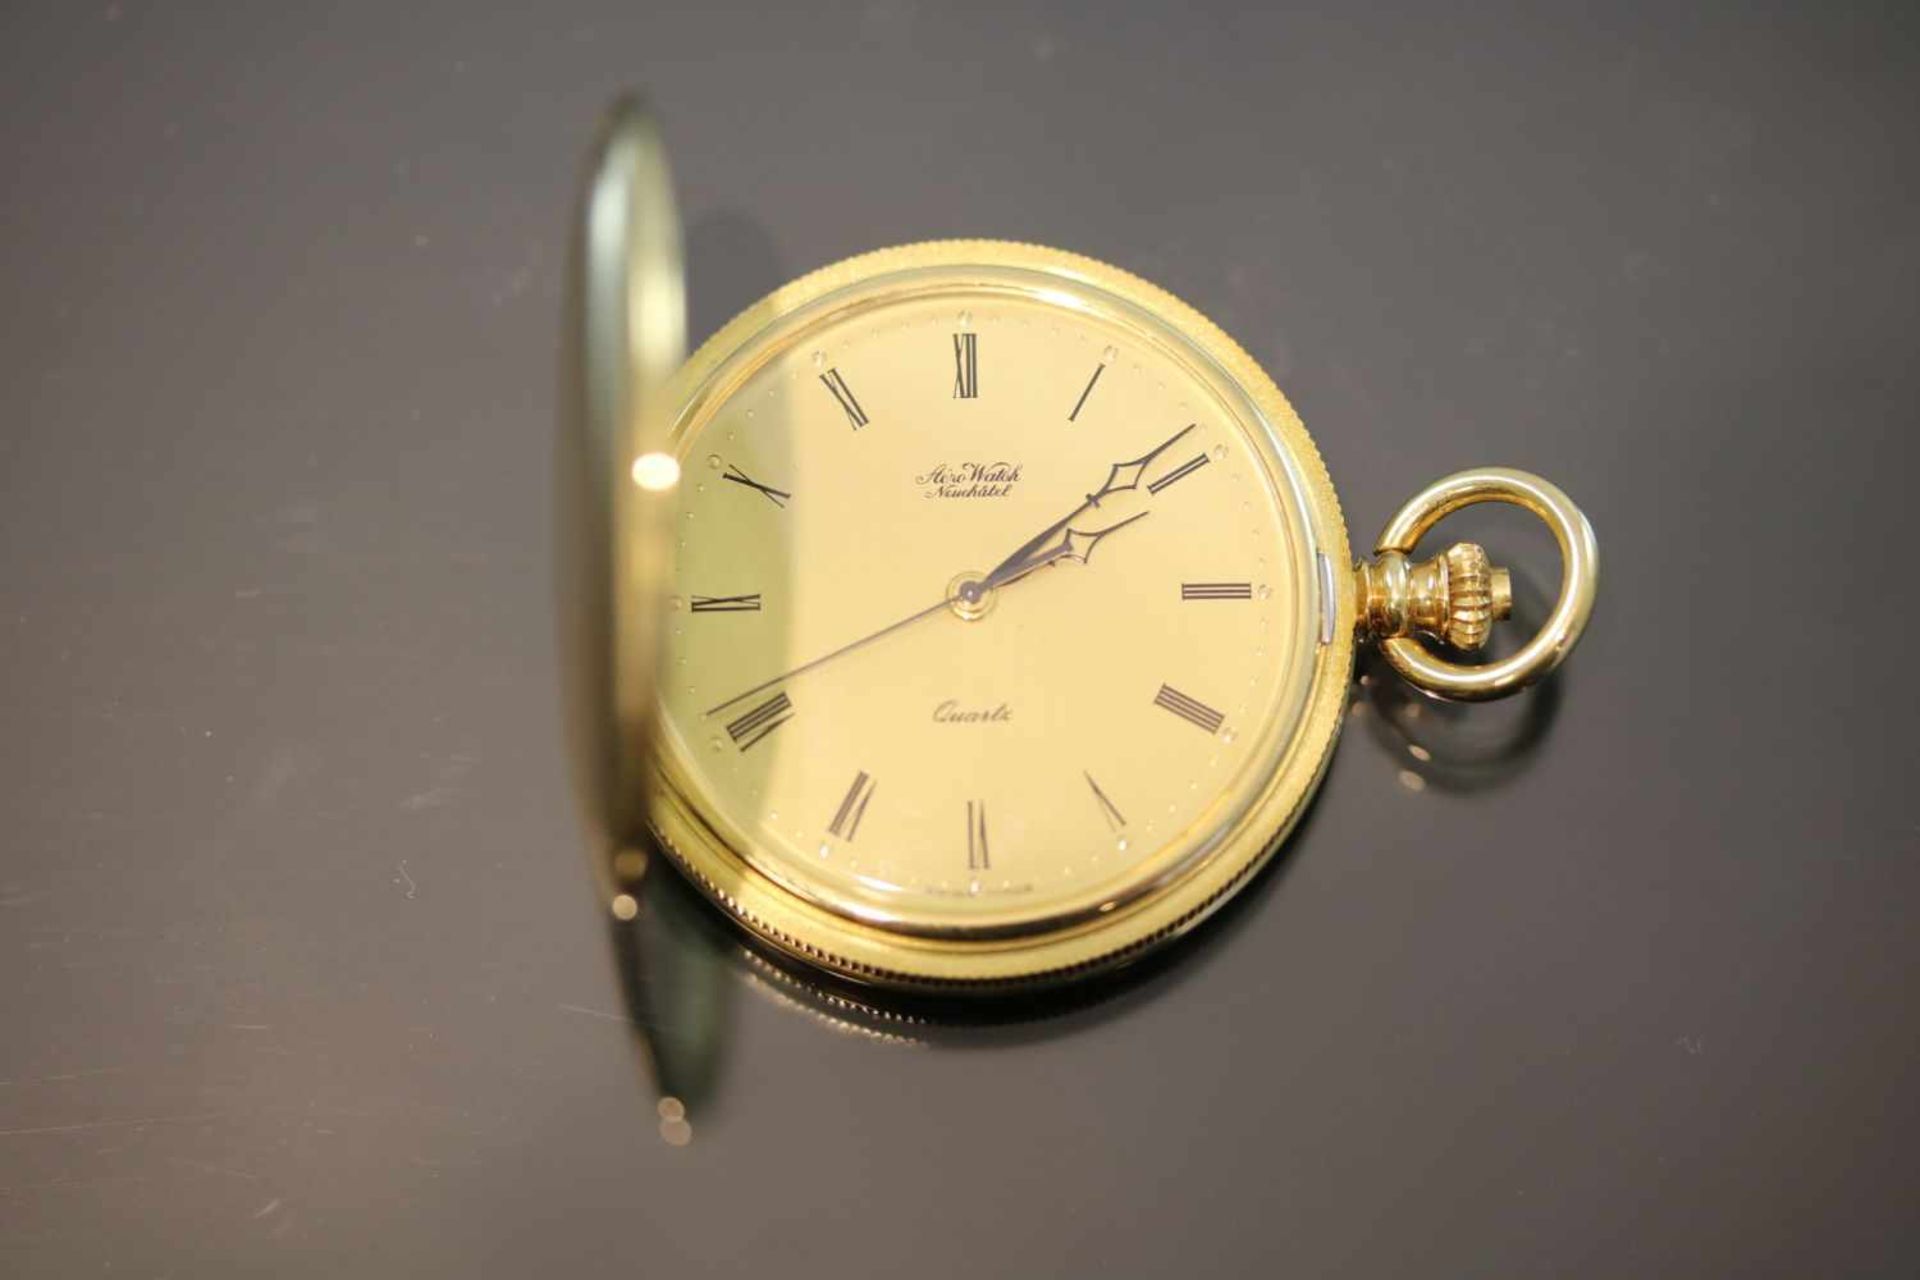 Aero-Watch-Taschenuhr, 750 GelbgoldWerk: QuartzFunktion: SekundneanzeigeGehäuse Ø: 4 cm Gewicht